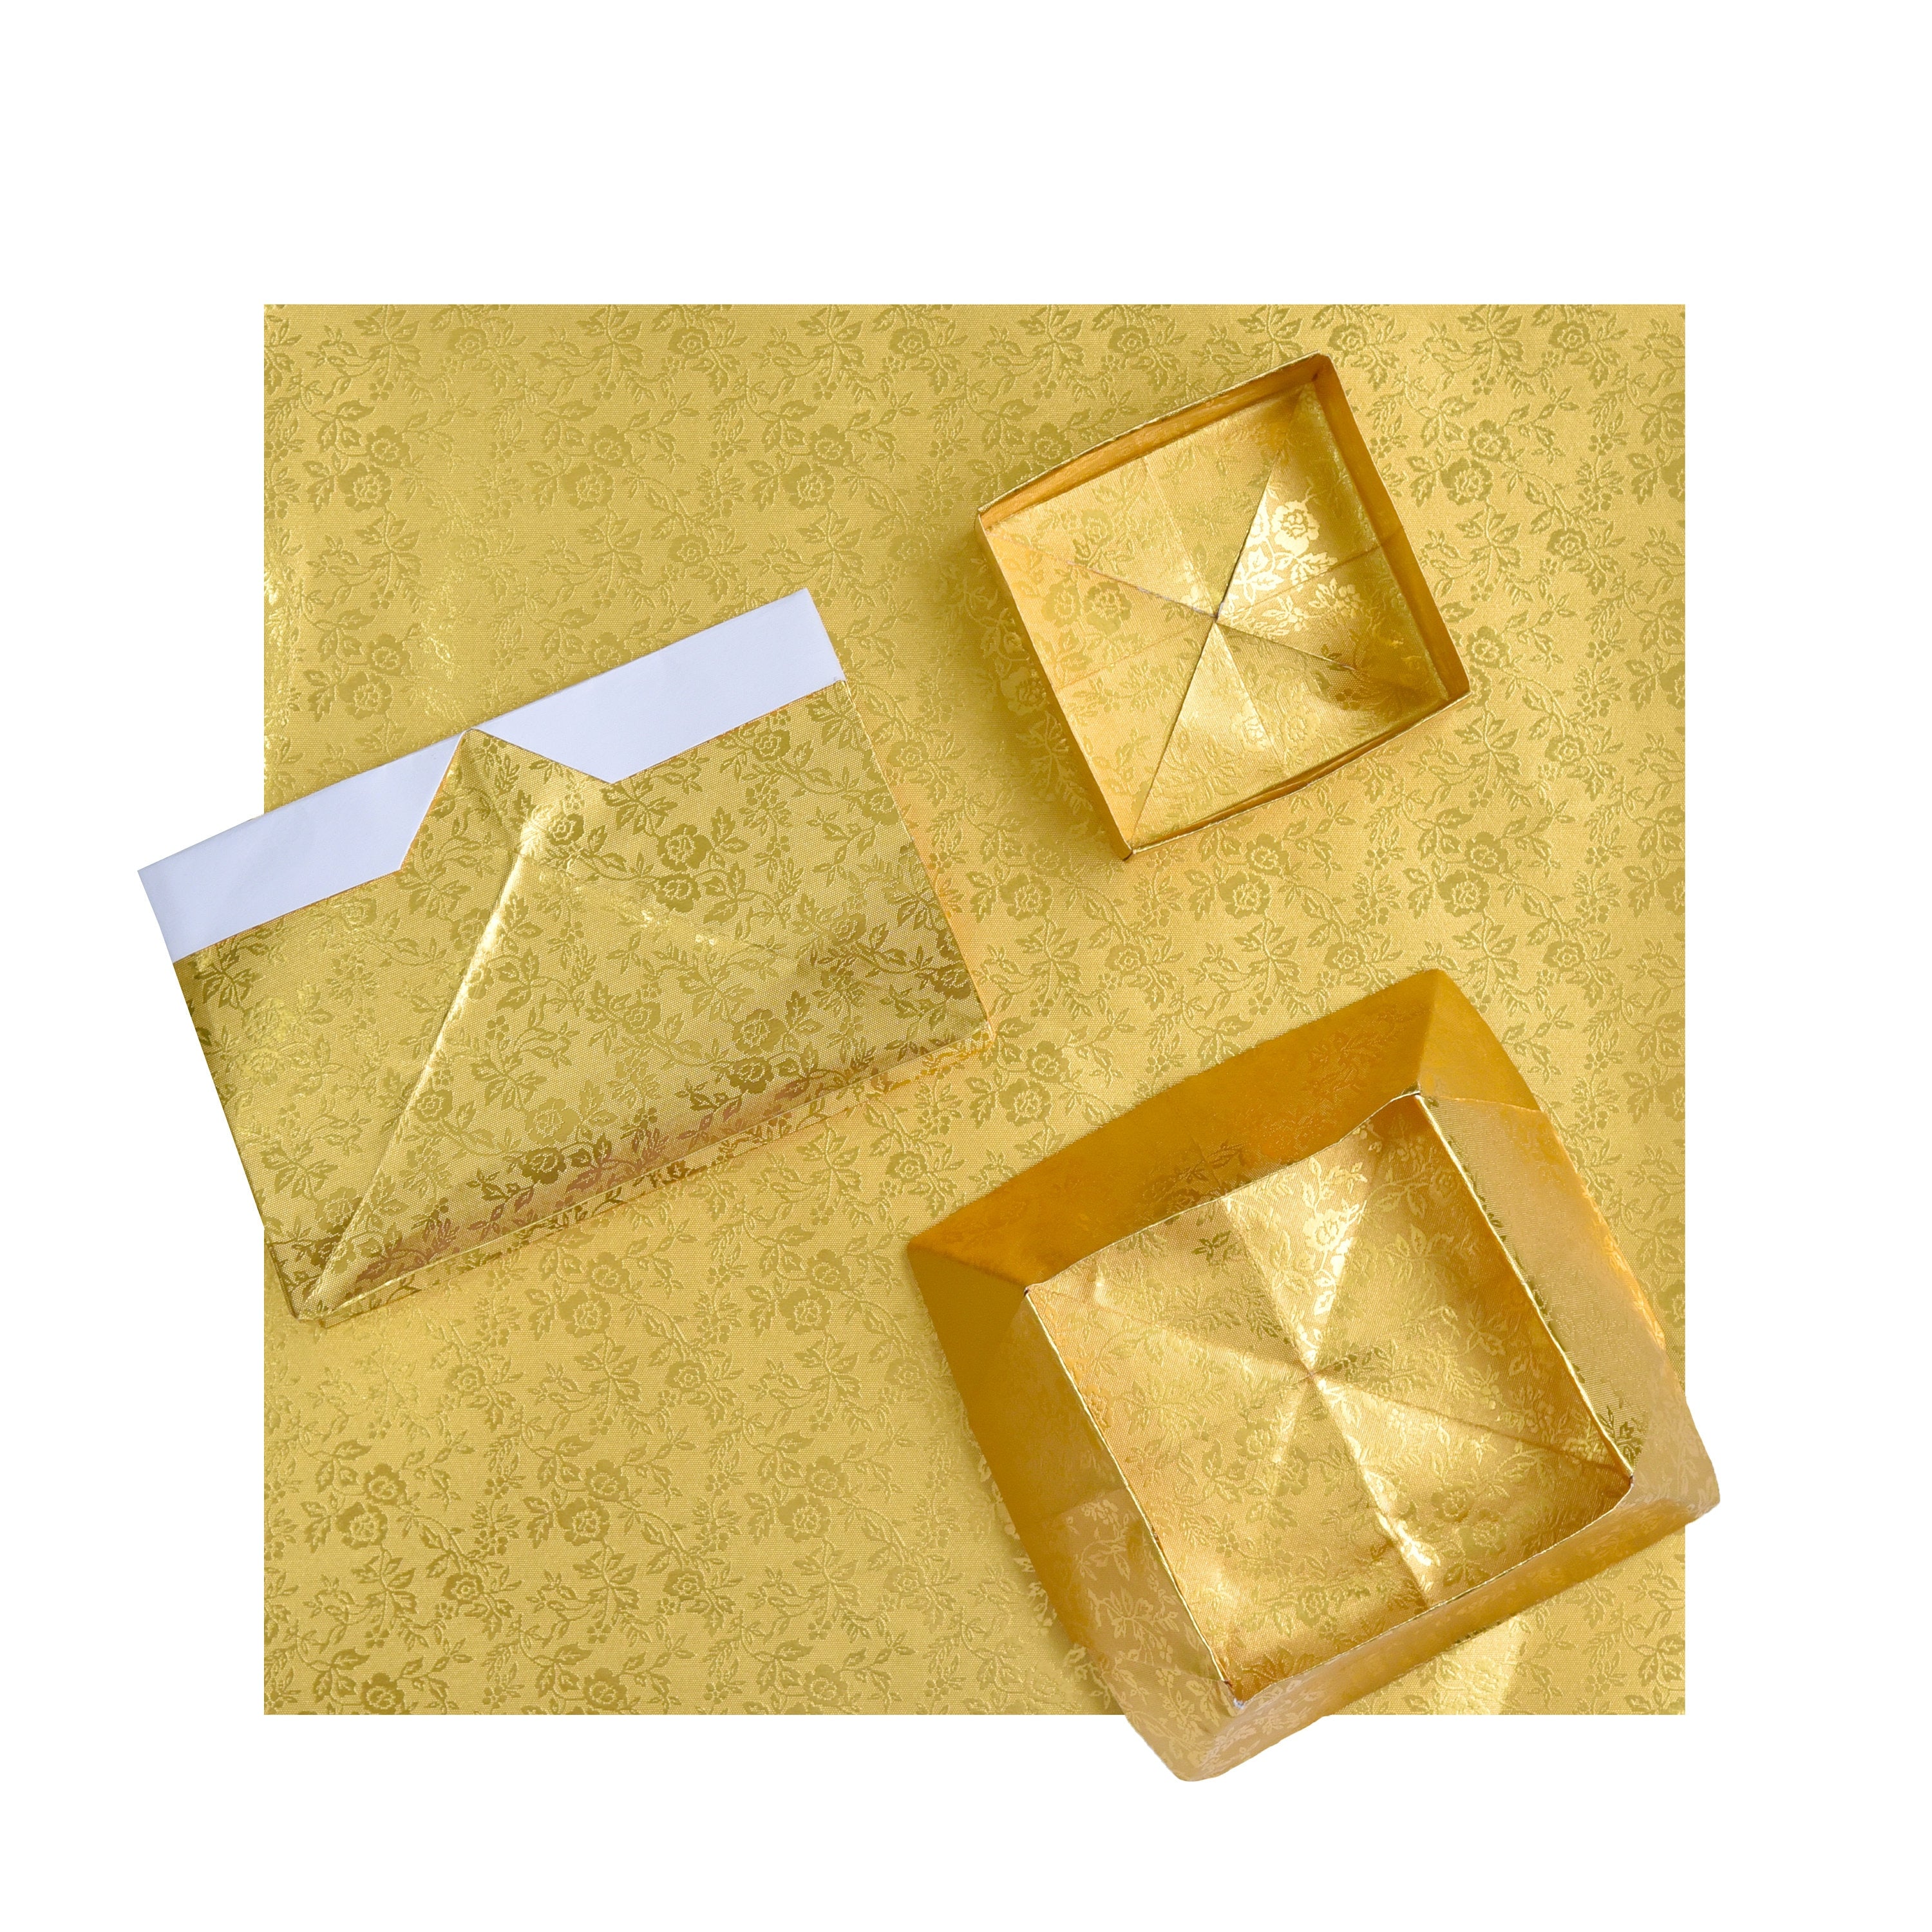 12 fogli 12x12 cartoncini per origami rivestiti in perle dorate, 125 g/m²: ideali per realizzare biglietti, scrapbooking, inviti e lavori con la carta